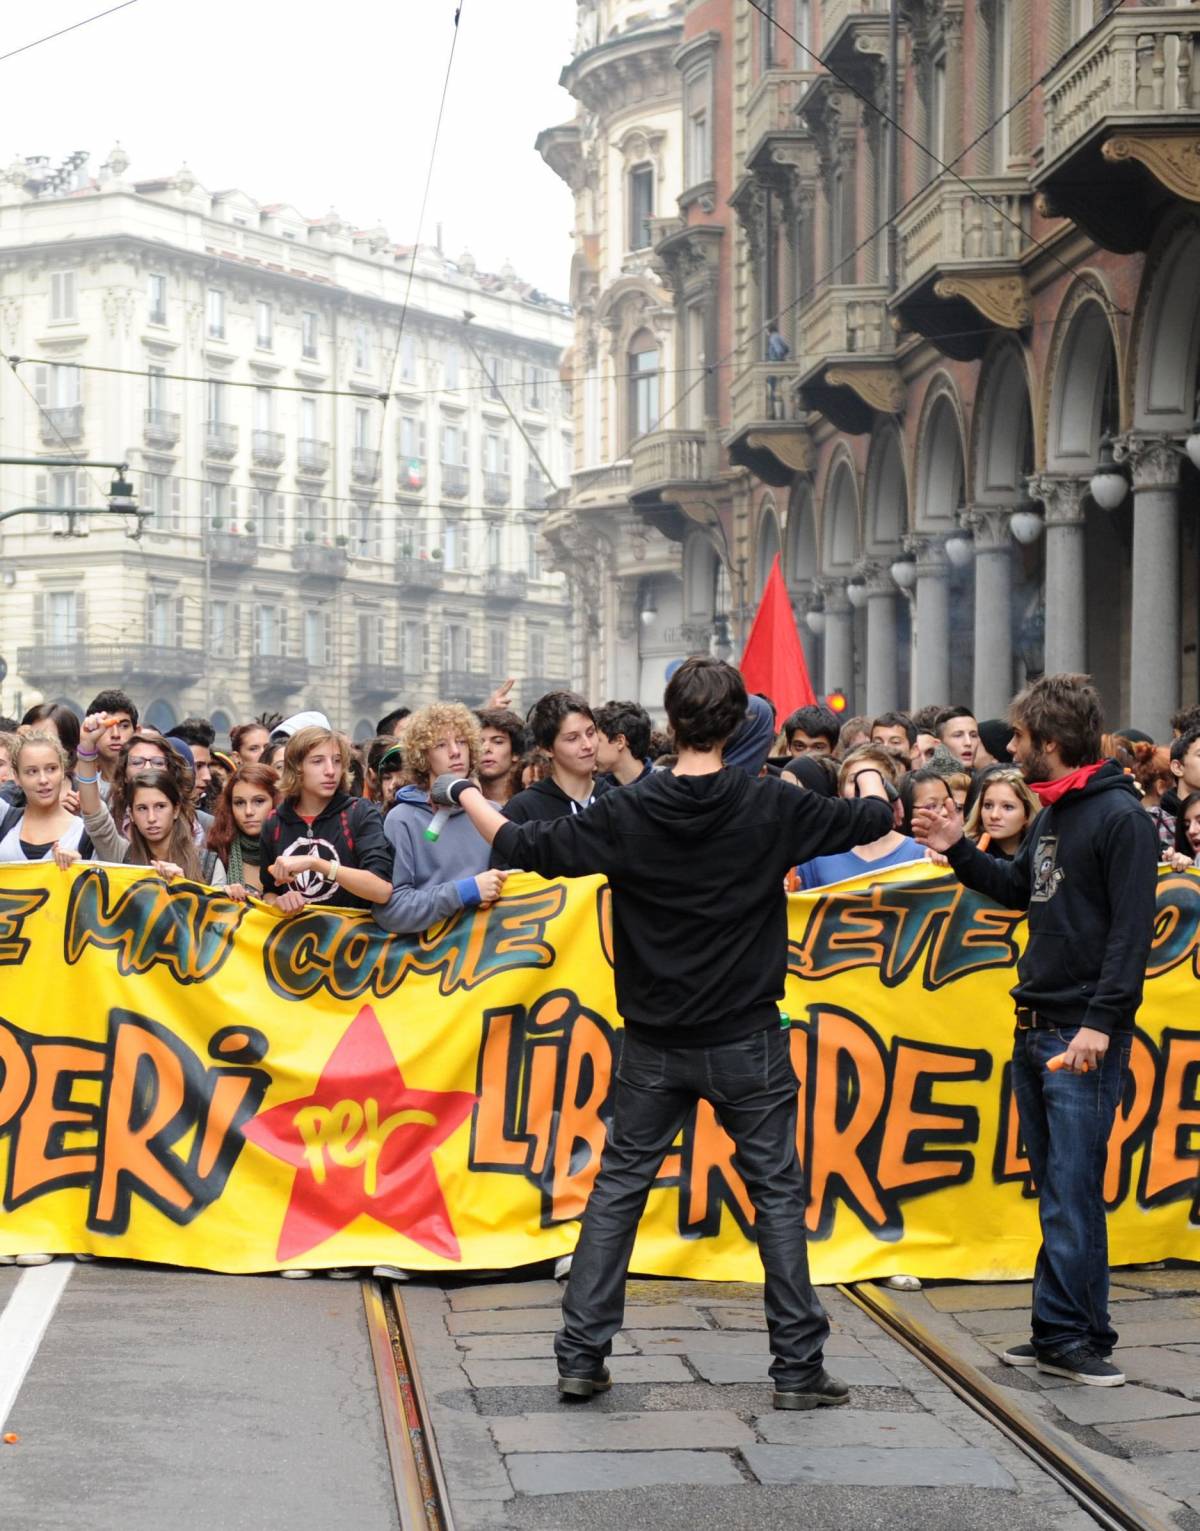 PRESIDE DI FERRO A VIBO: «IMPARINO LA COERENZA» Non sanno perché protestano, alunni sospesi